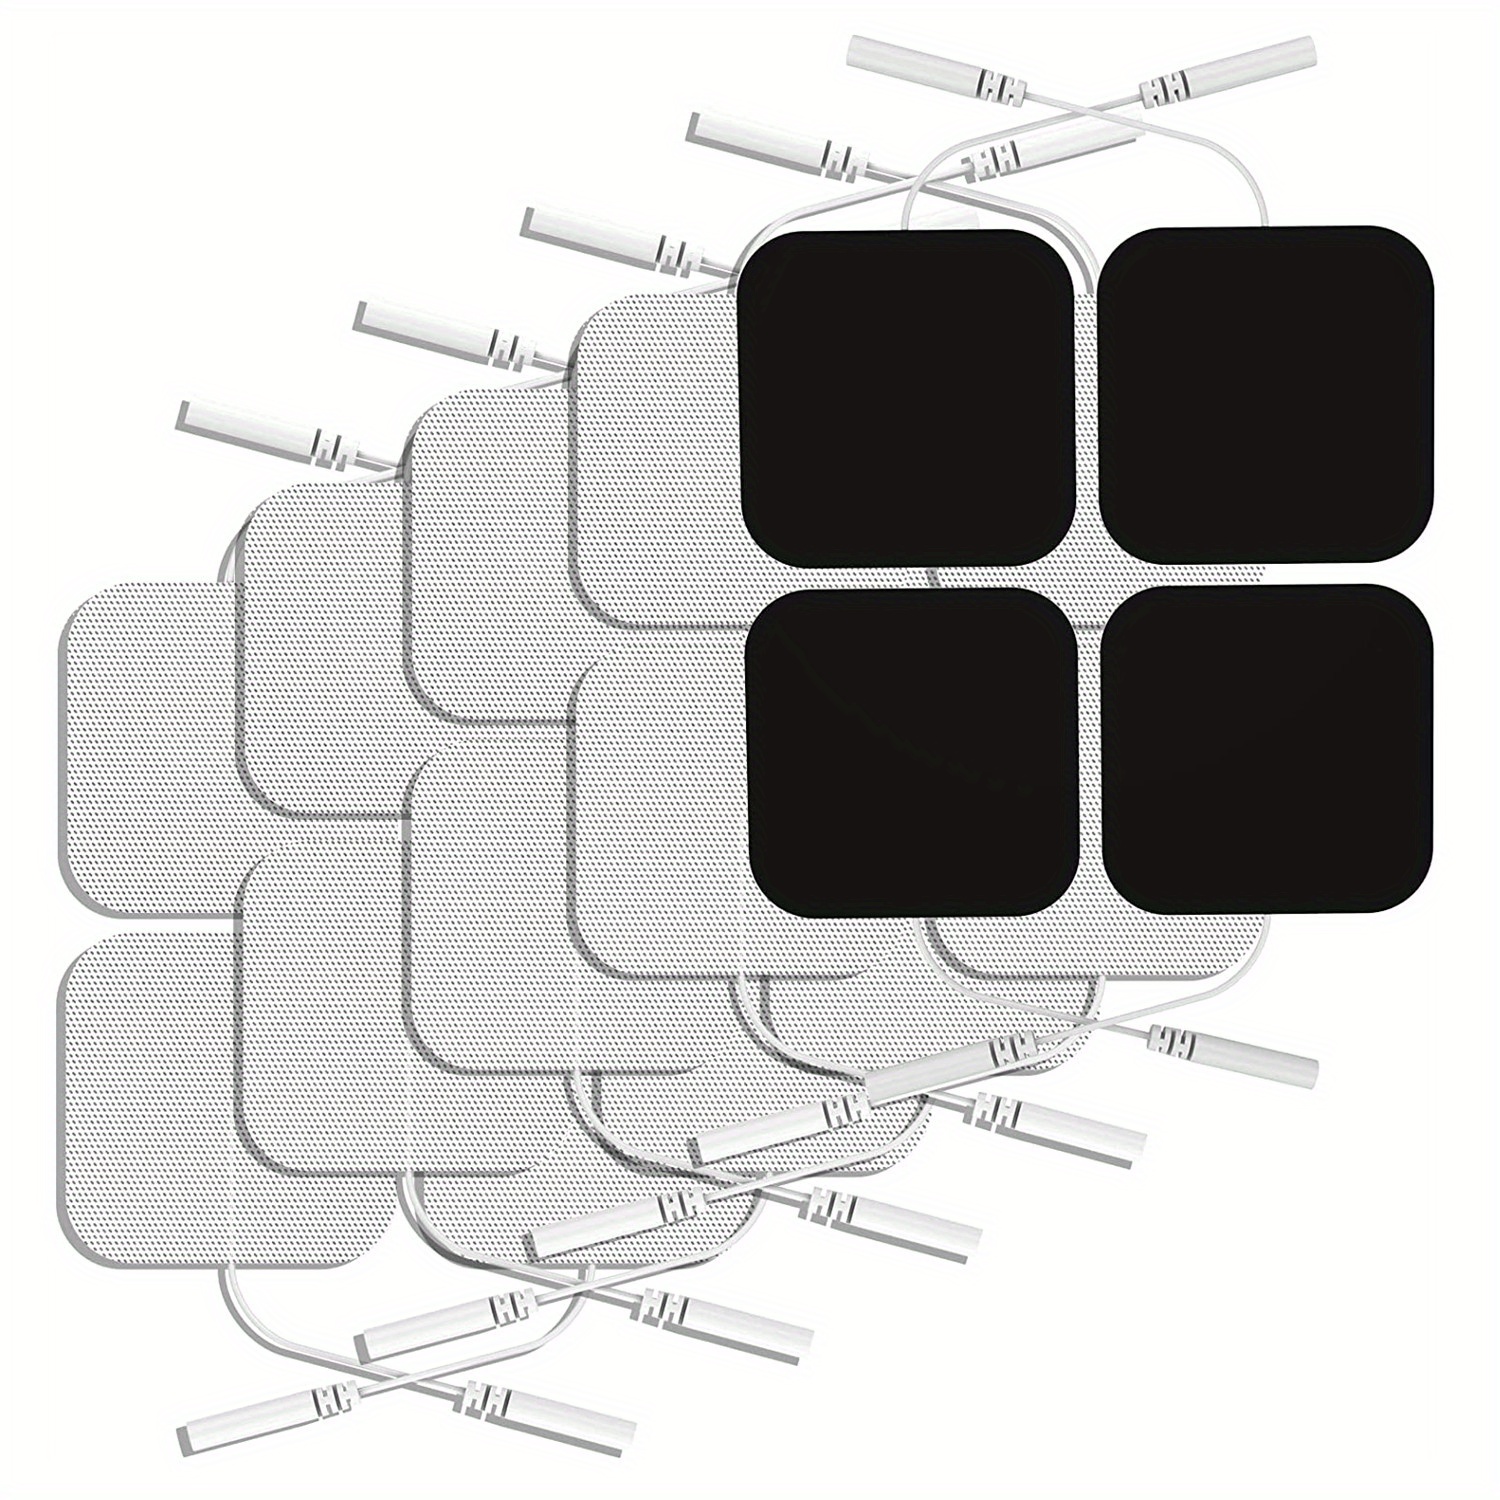 AUVON TENS Unit Replacement Pads 2x2 48 Pcs Value Pack, Reusable